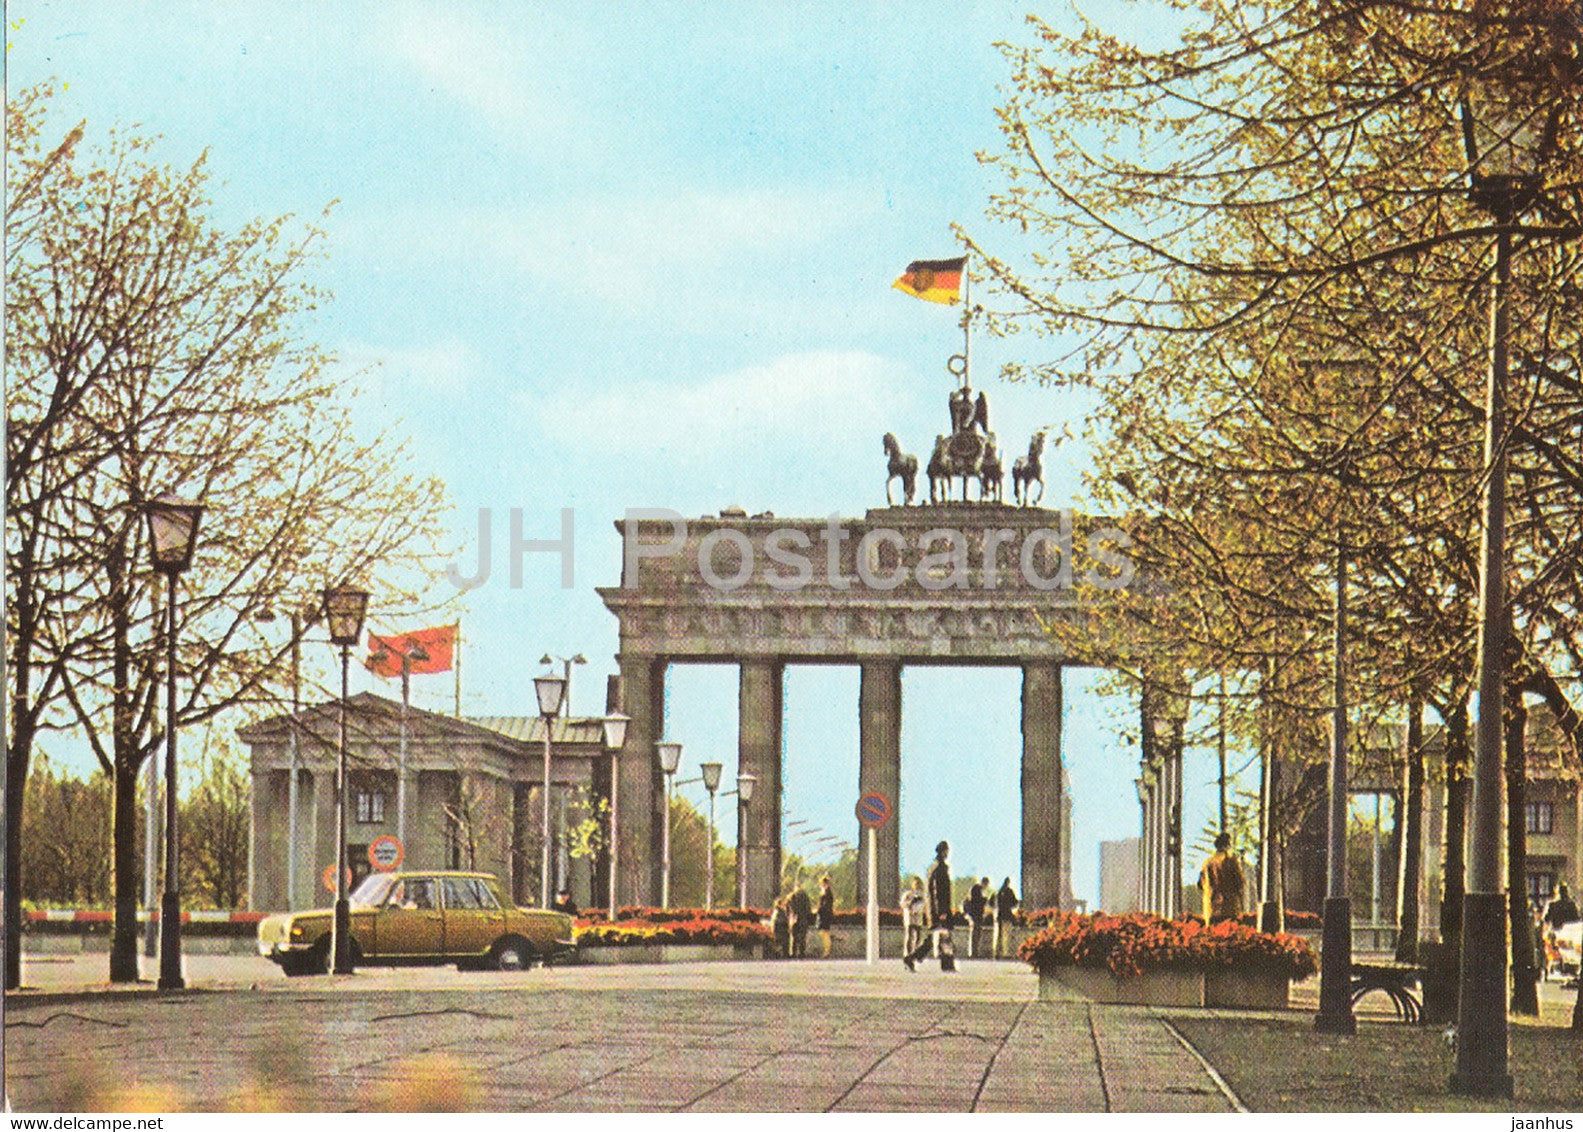 Berlin - Branderburger Tor - car - 5 - Germany DDR - unused - JH Postcards